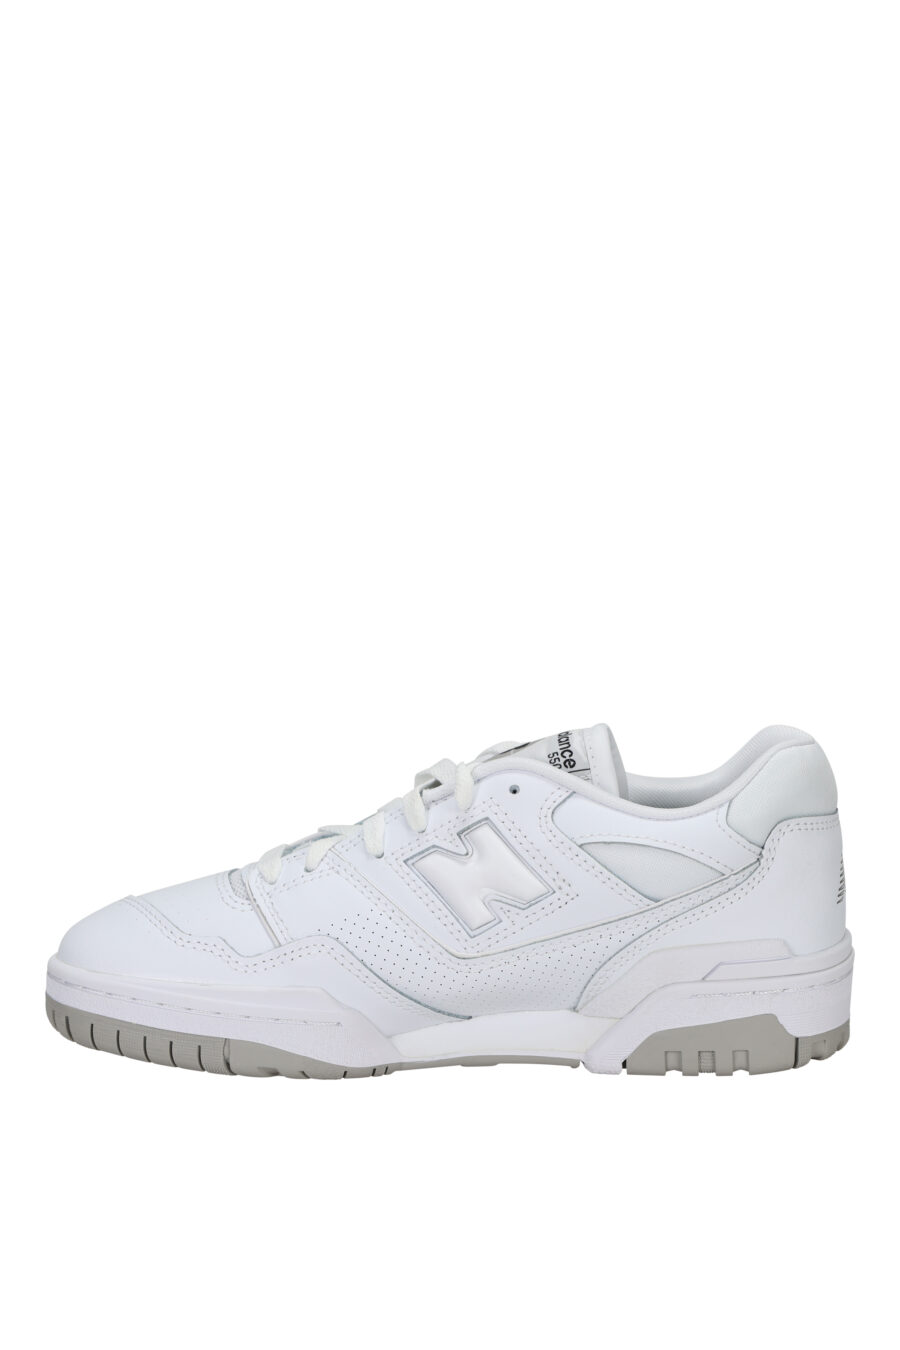 Zapatillas blancas mix con gris "550" y logo "N" blanco - 194768756931 2